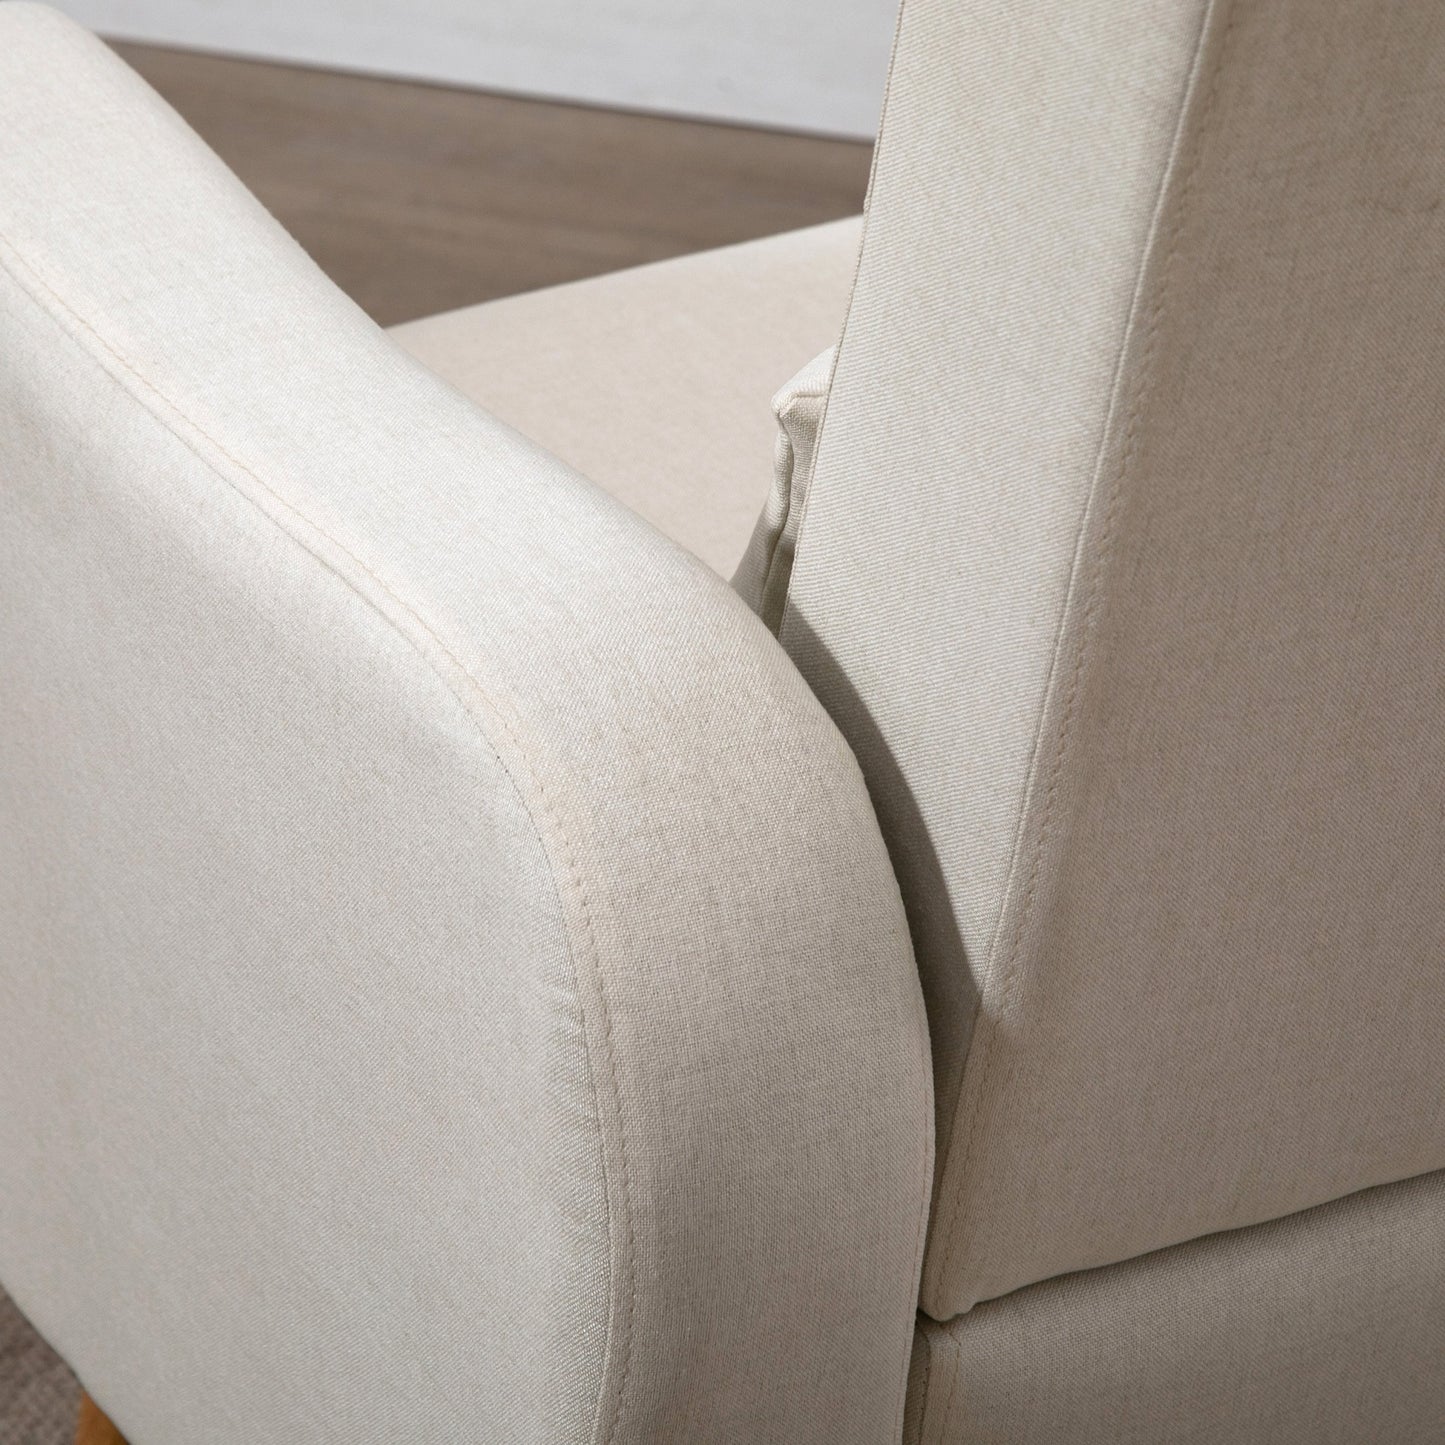 HOMCOM Nordic Armchair Chair Sofa, 72W x 77D x 93Hcm-Cream White